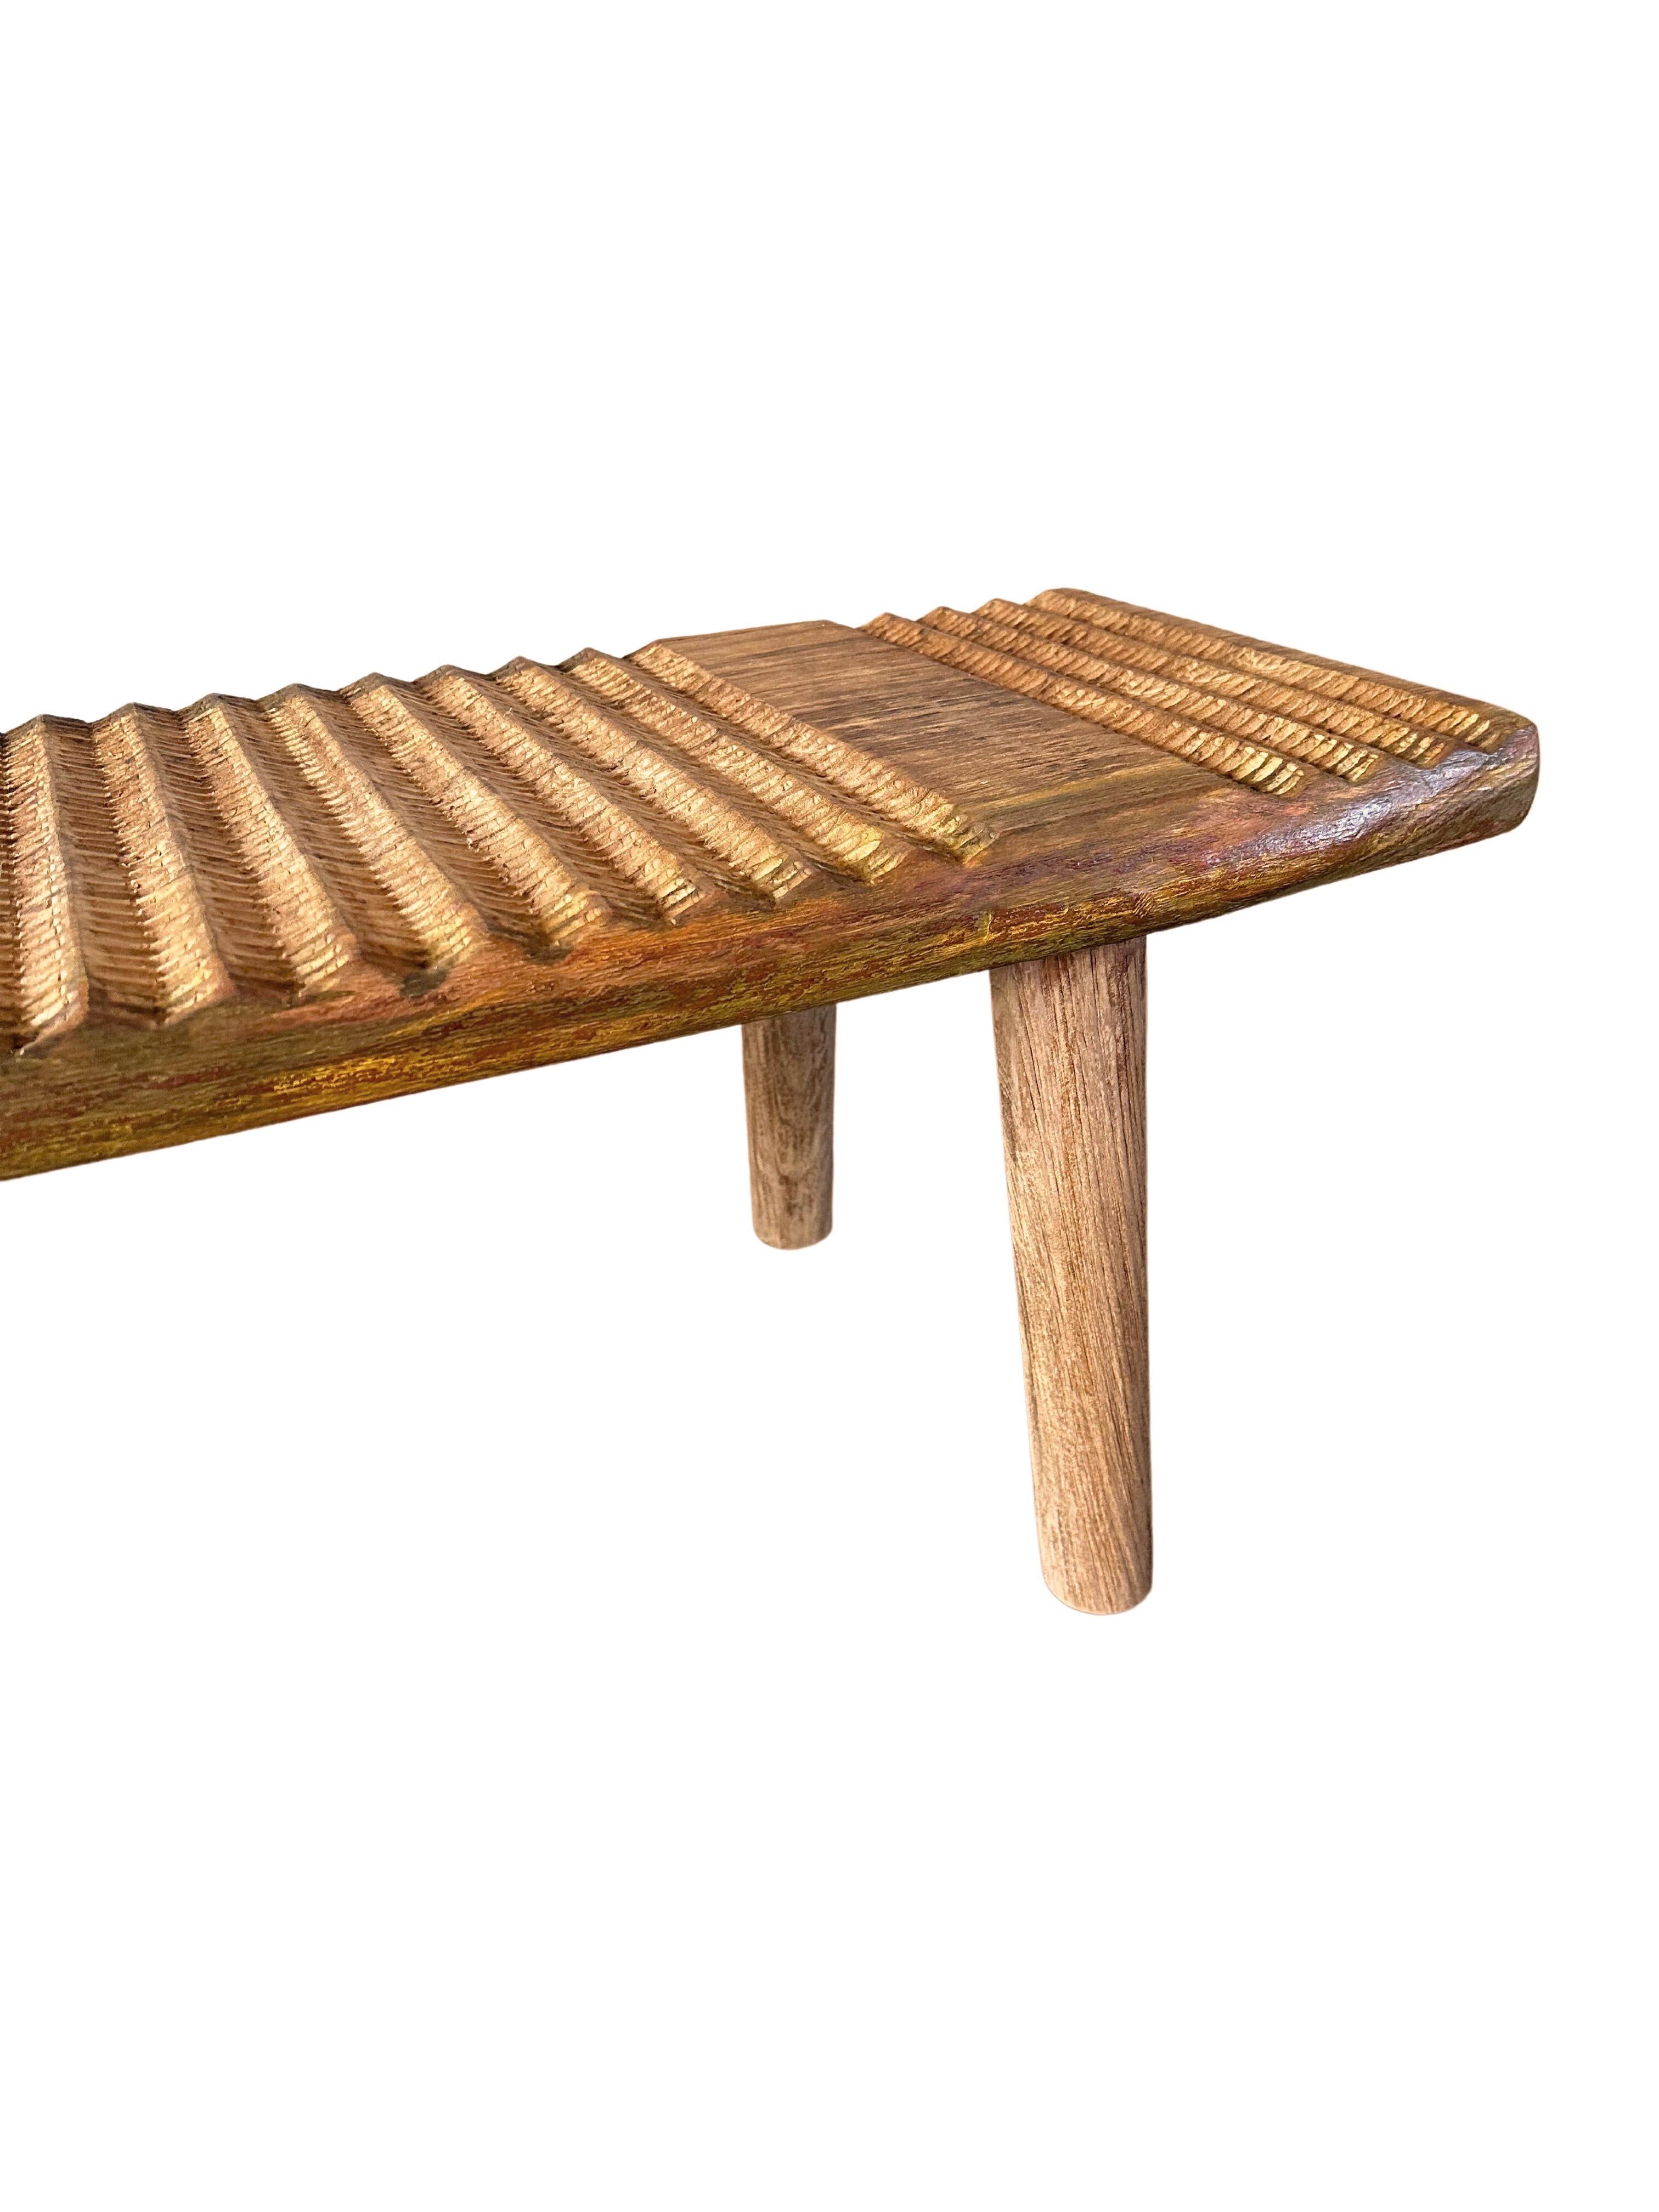 Hand-Carved Teak Wood Sculptural Bench, Carved Detailing, Modern Organic For Sale